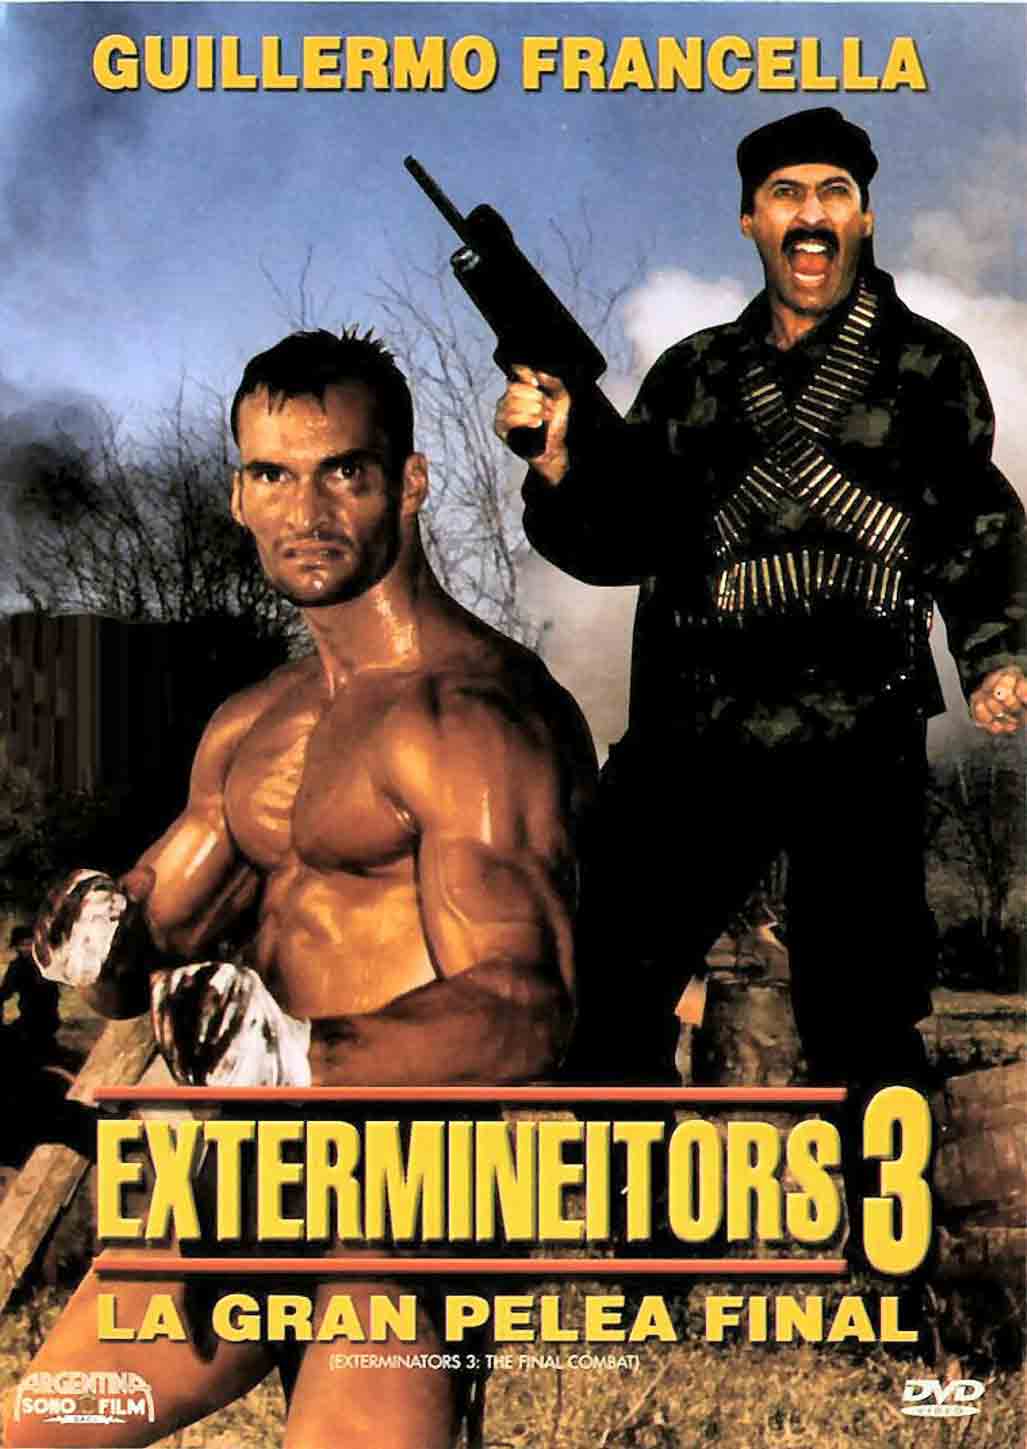 Exterminators Pics, Comics Collection